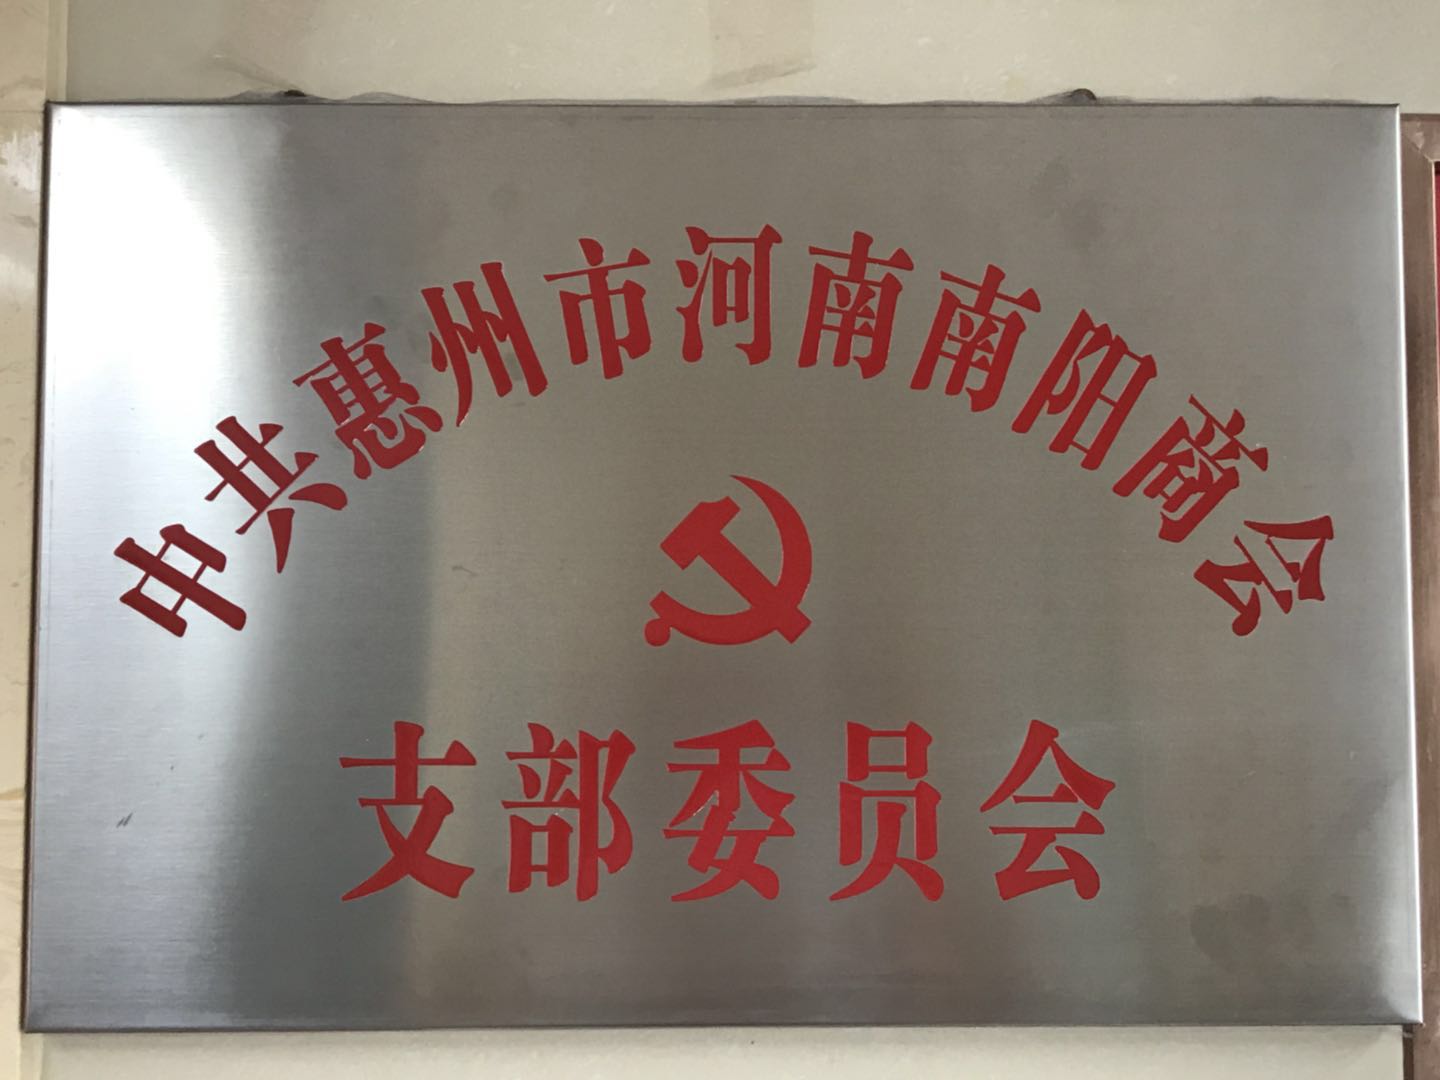 中共惠州市河南南阳商会支部委员会正式揭牌成立